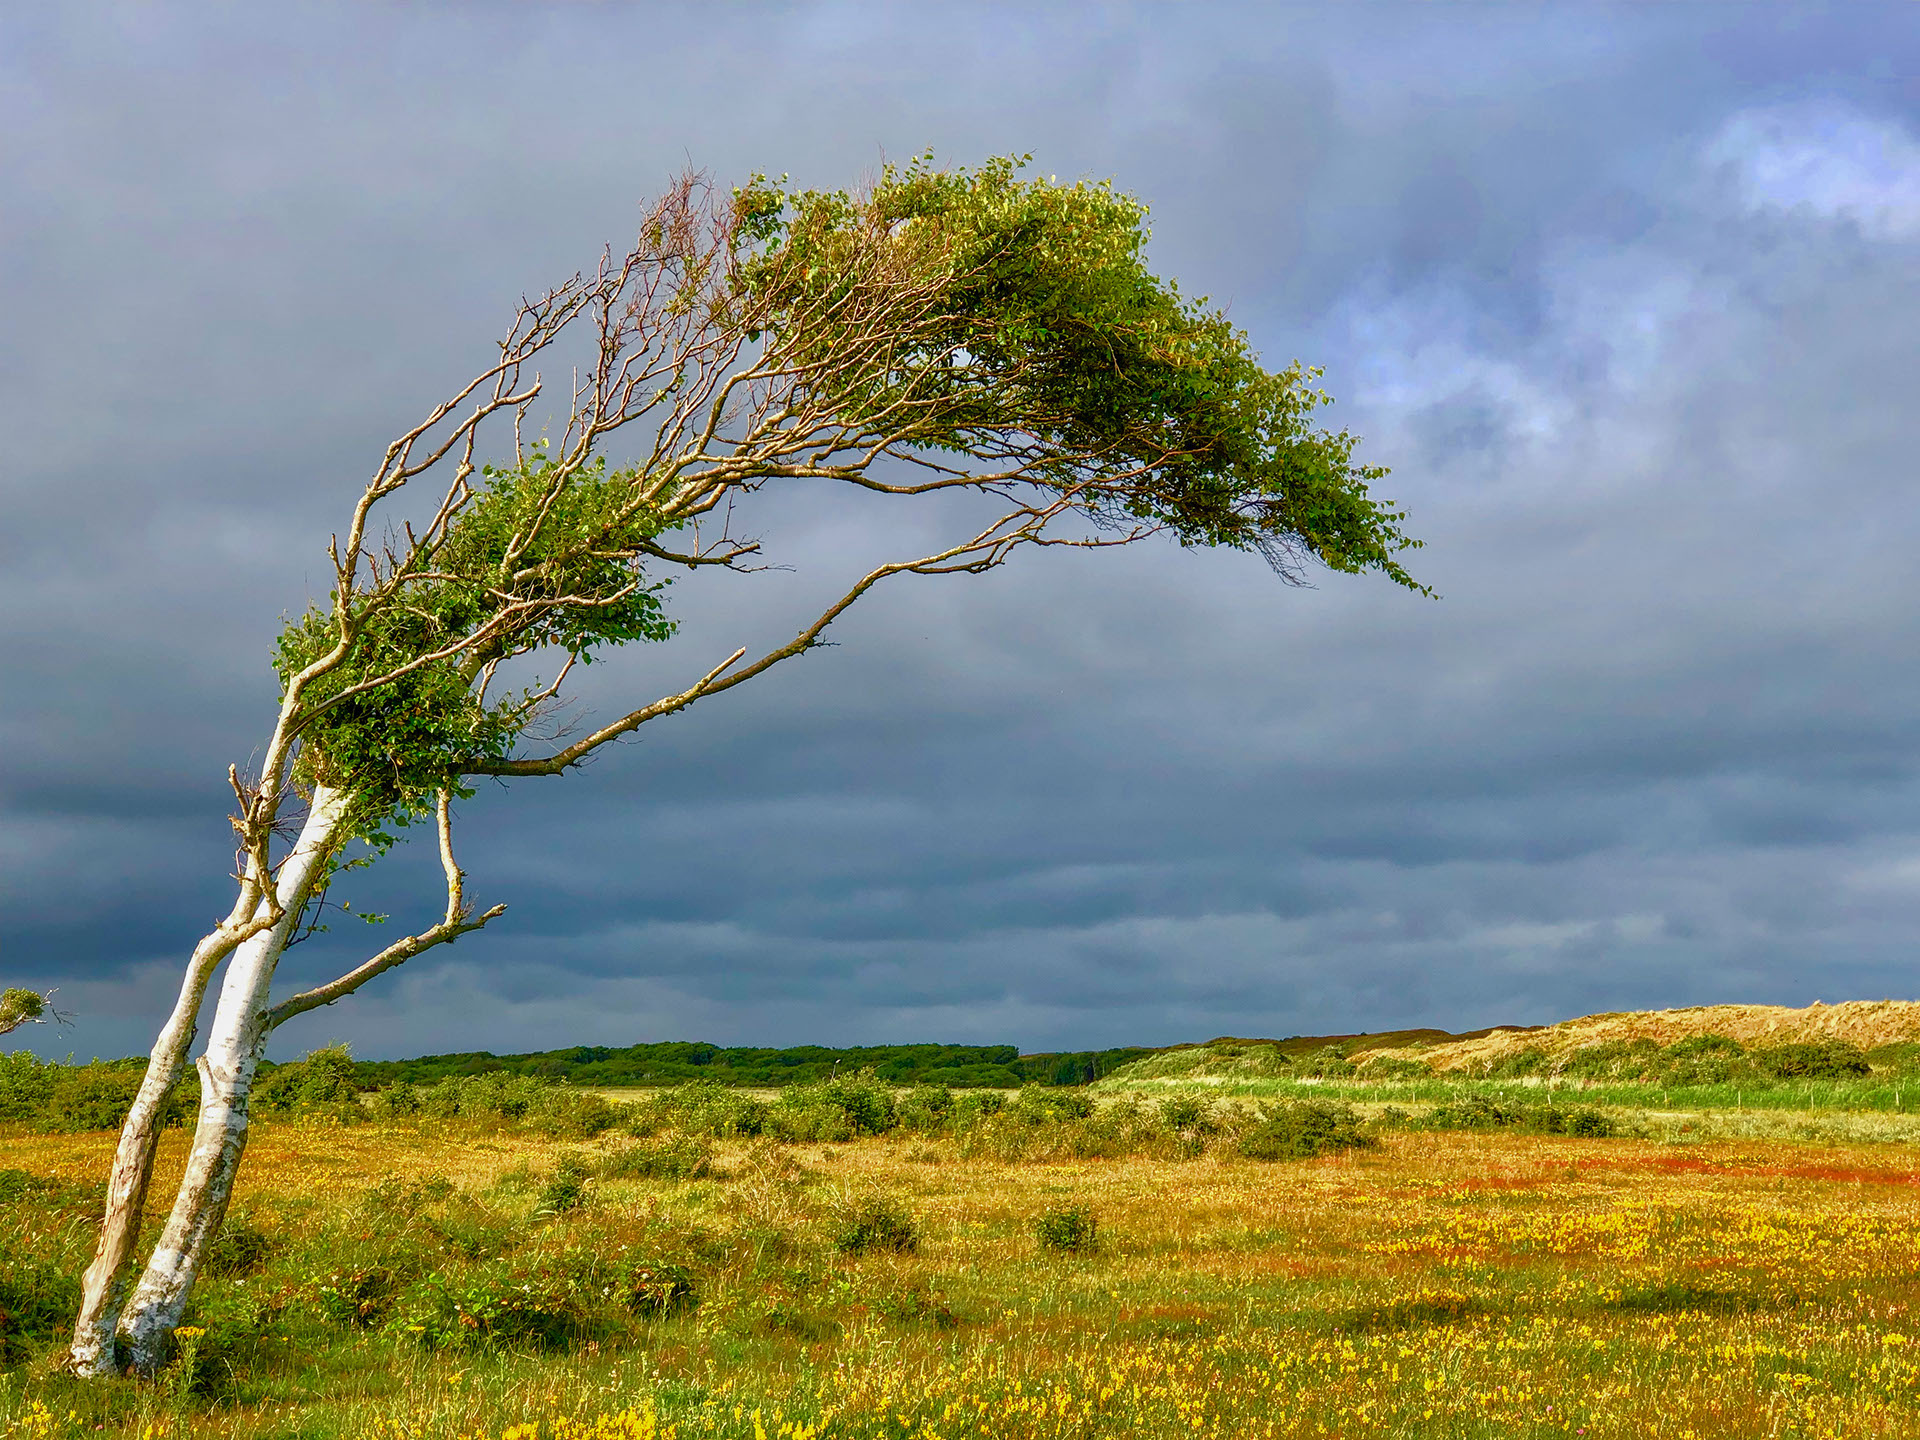 Texels meest gefotografeerde boom in de zomer